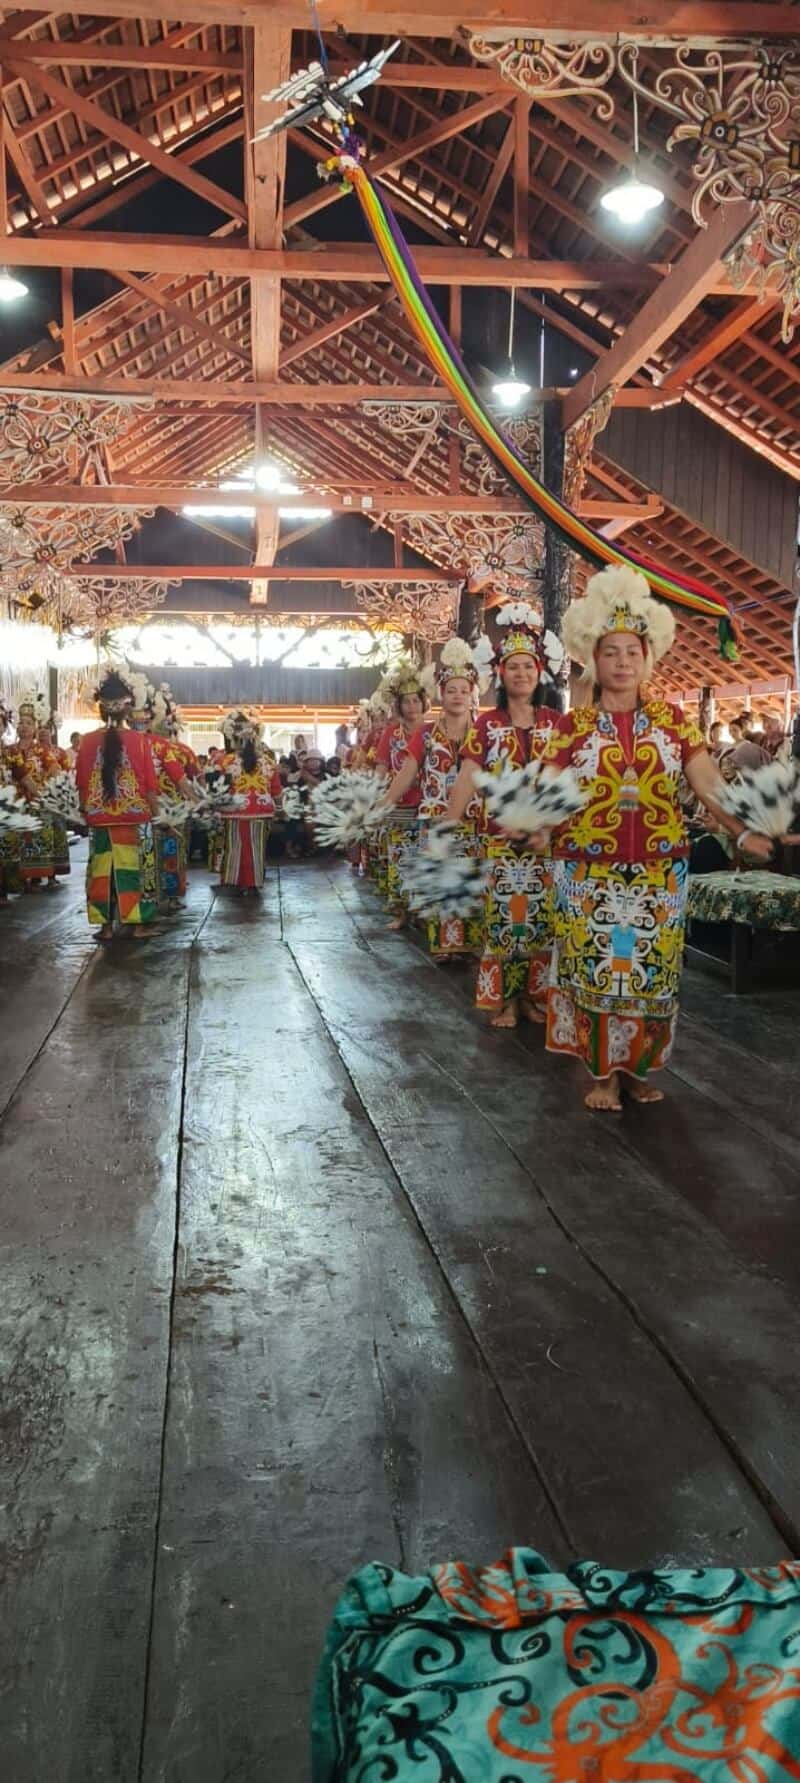 Wisata Desa Budaya Pampang, Sejarah Kecintaan Terhadap Indonesia